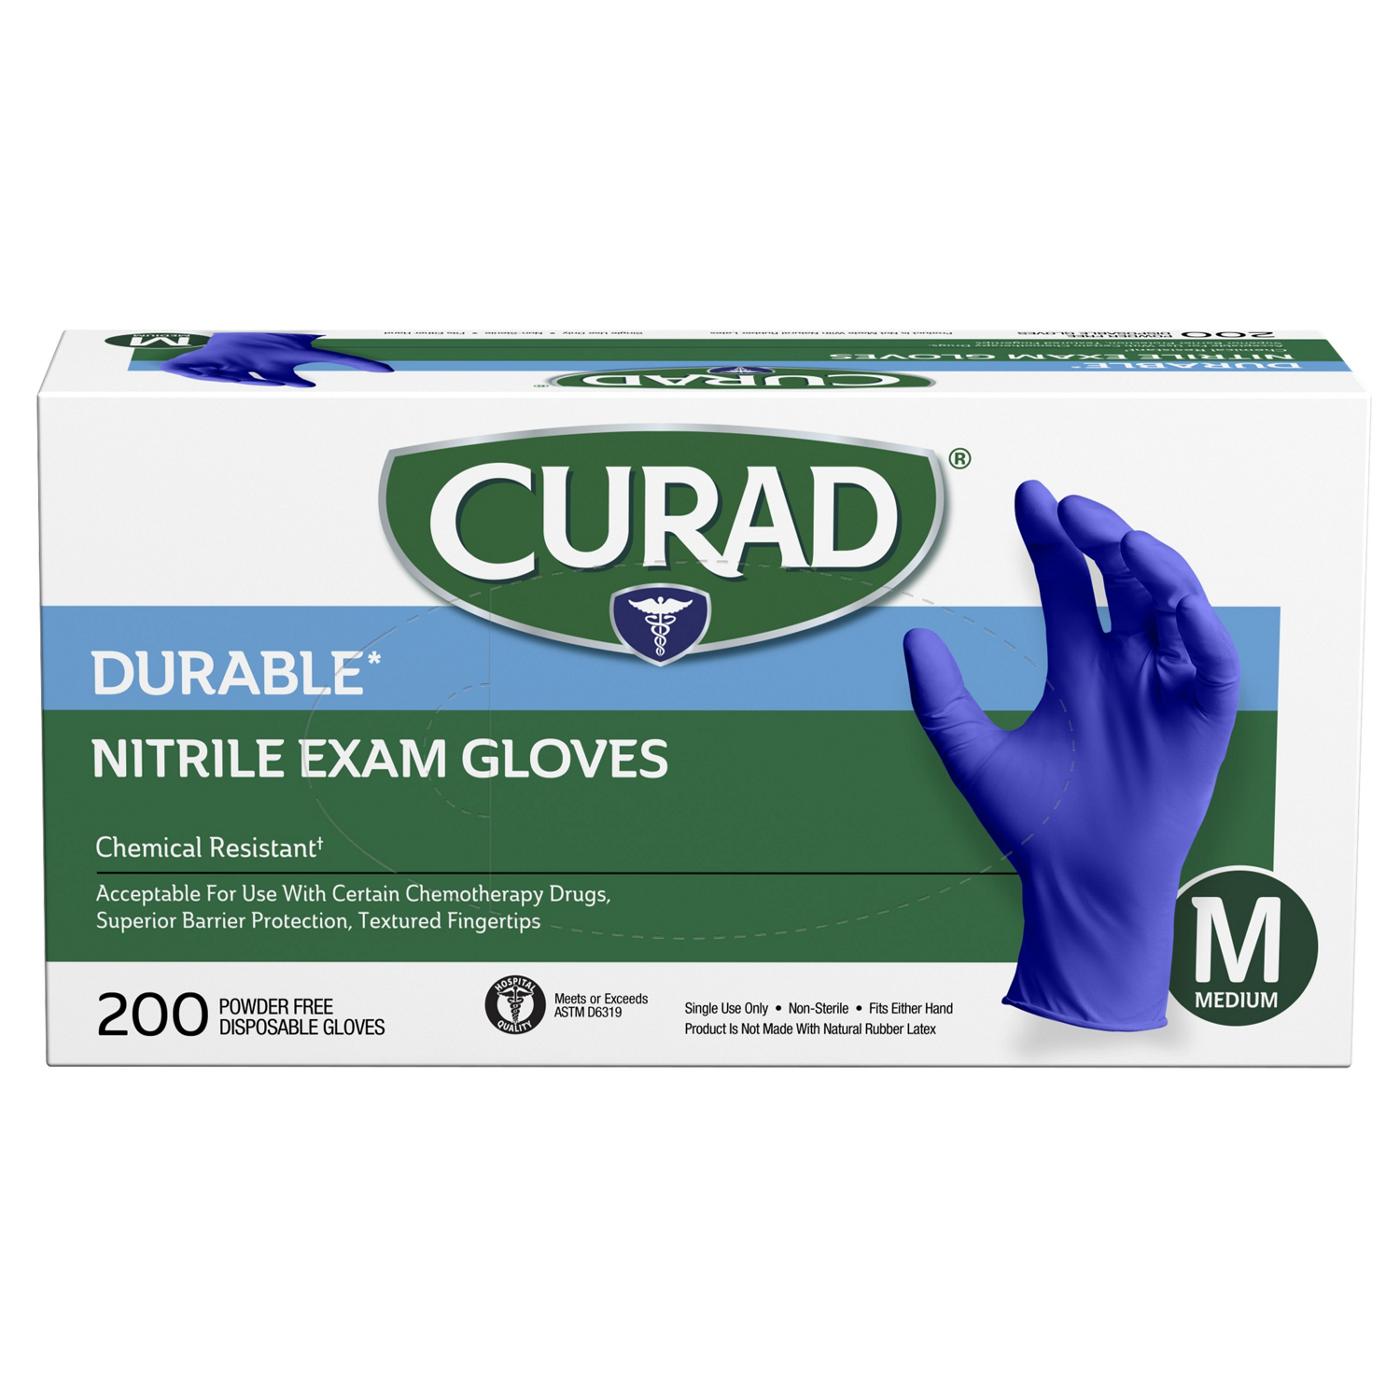 Curad Durable Nitrile Exam Gloves -  Medium; image 3 of 3